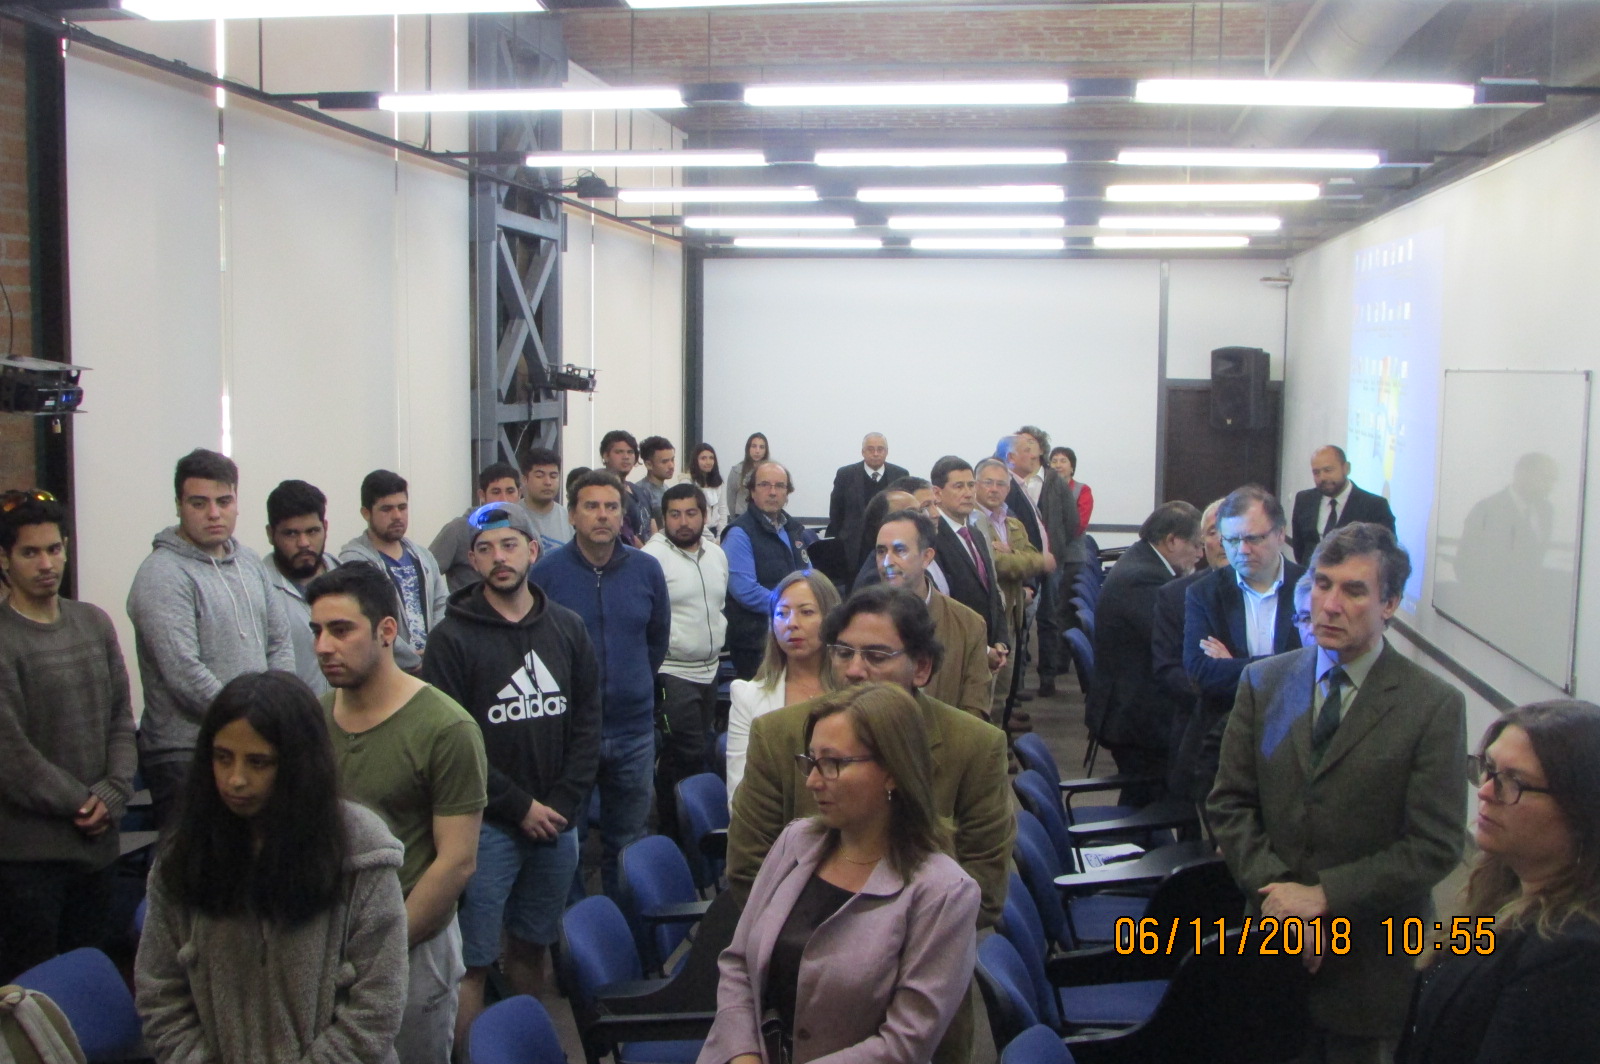 Asistentes entonando el himno de la Universidad de Valparaíso